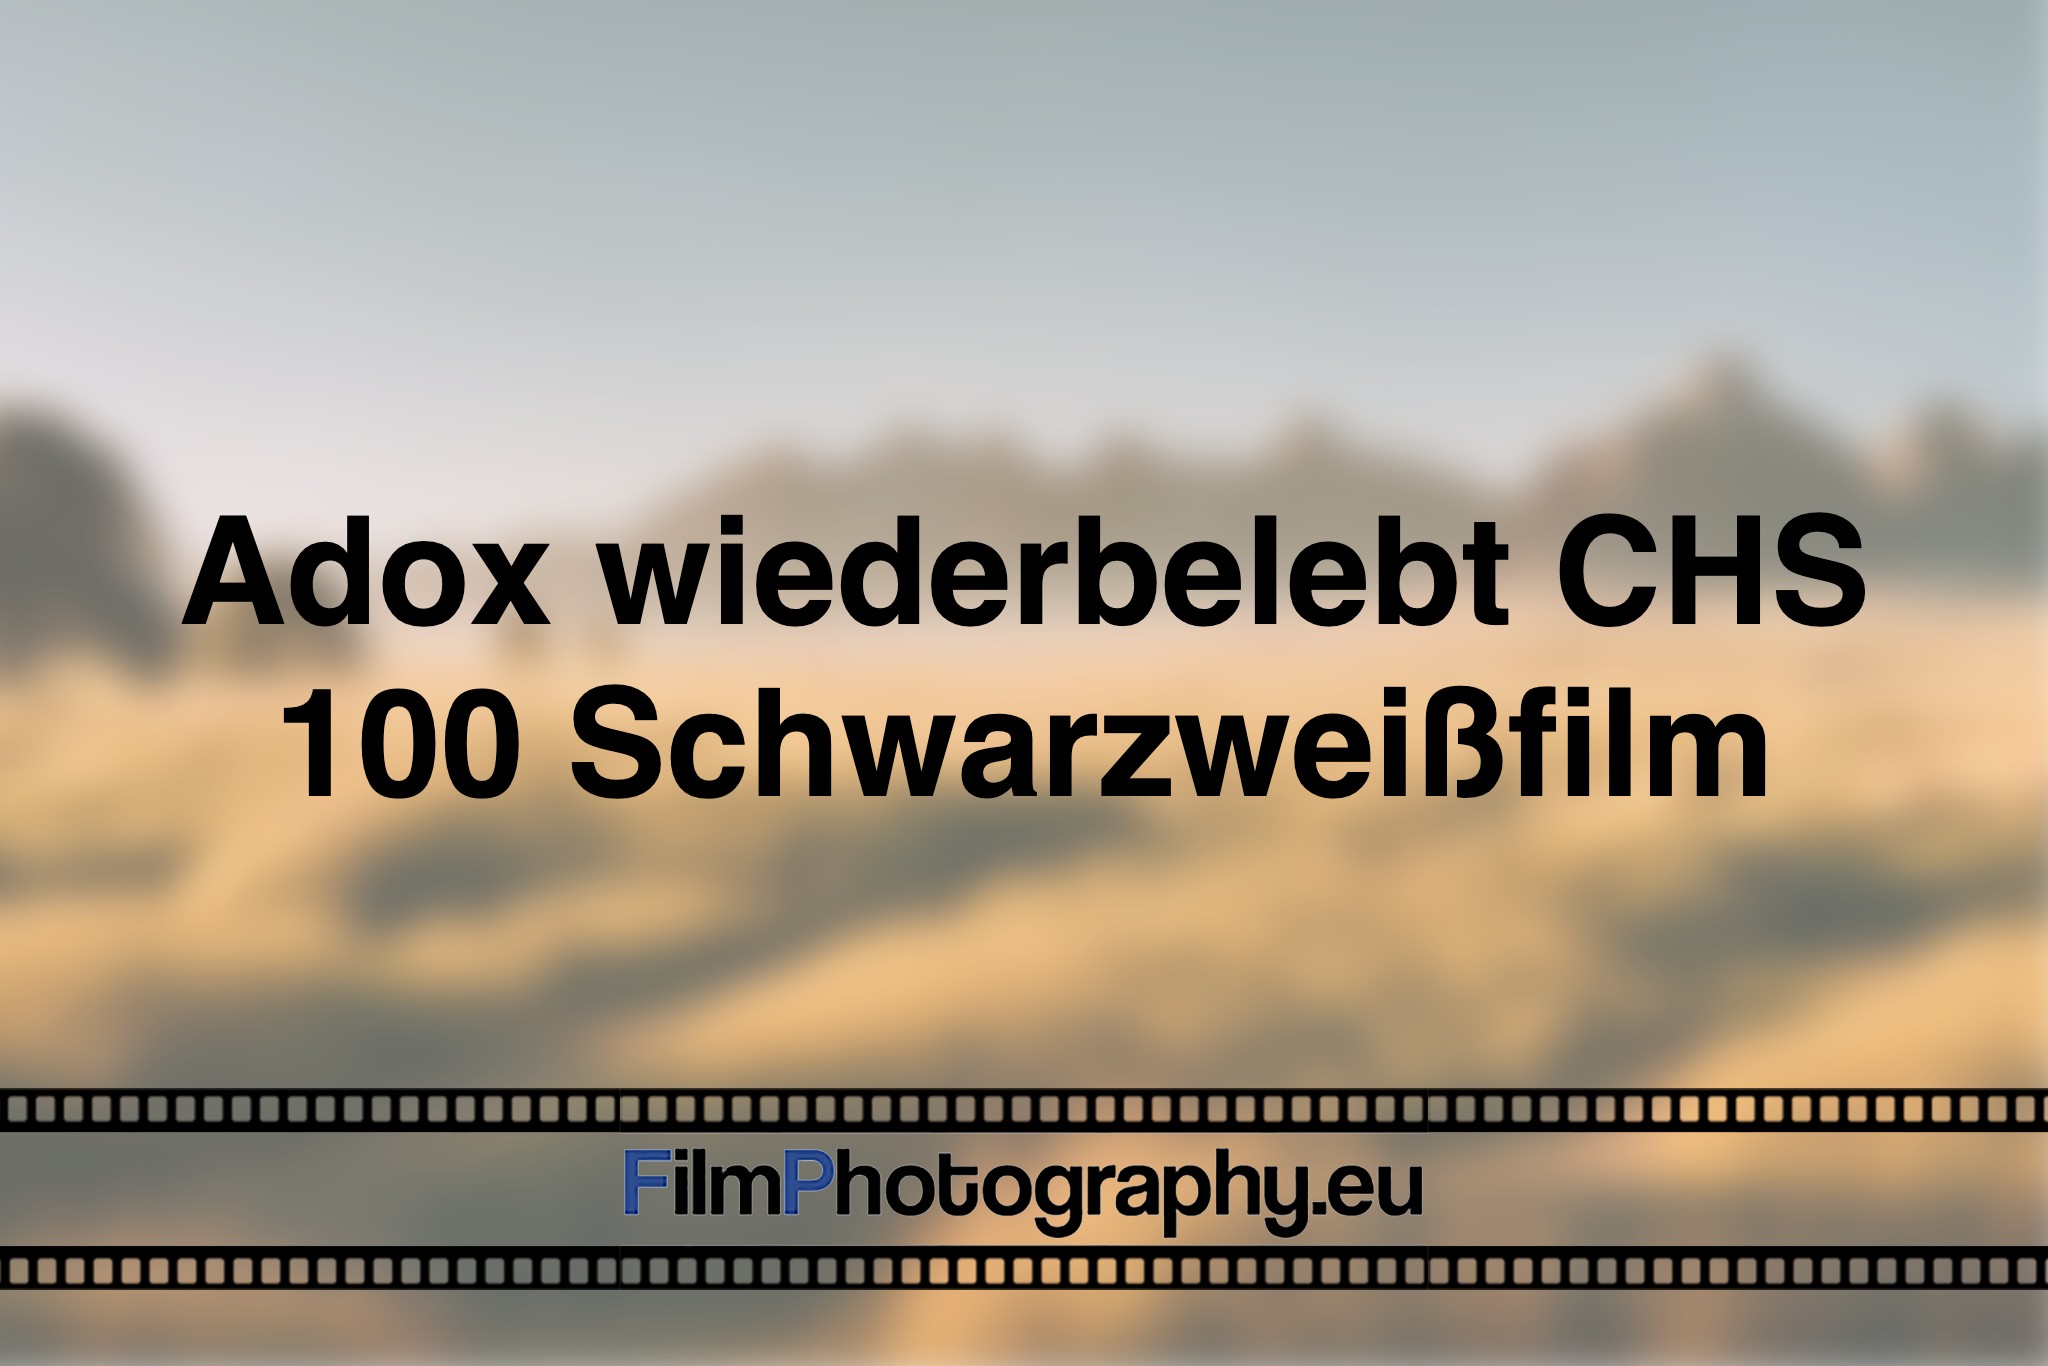 adox-wiederbelebt-chs-100-schwarzweißfilm-photo-bnv